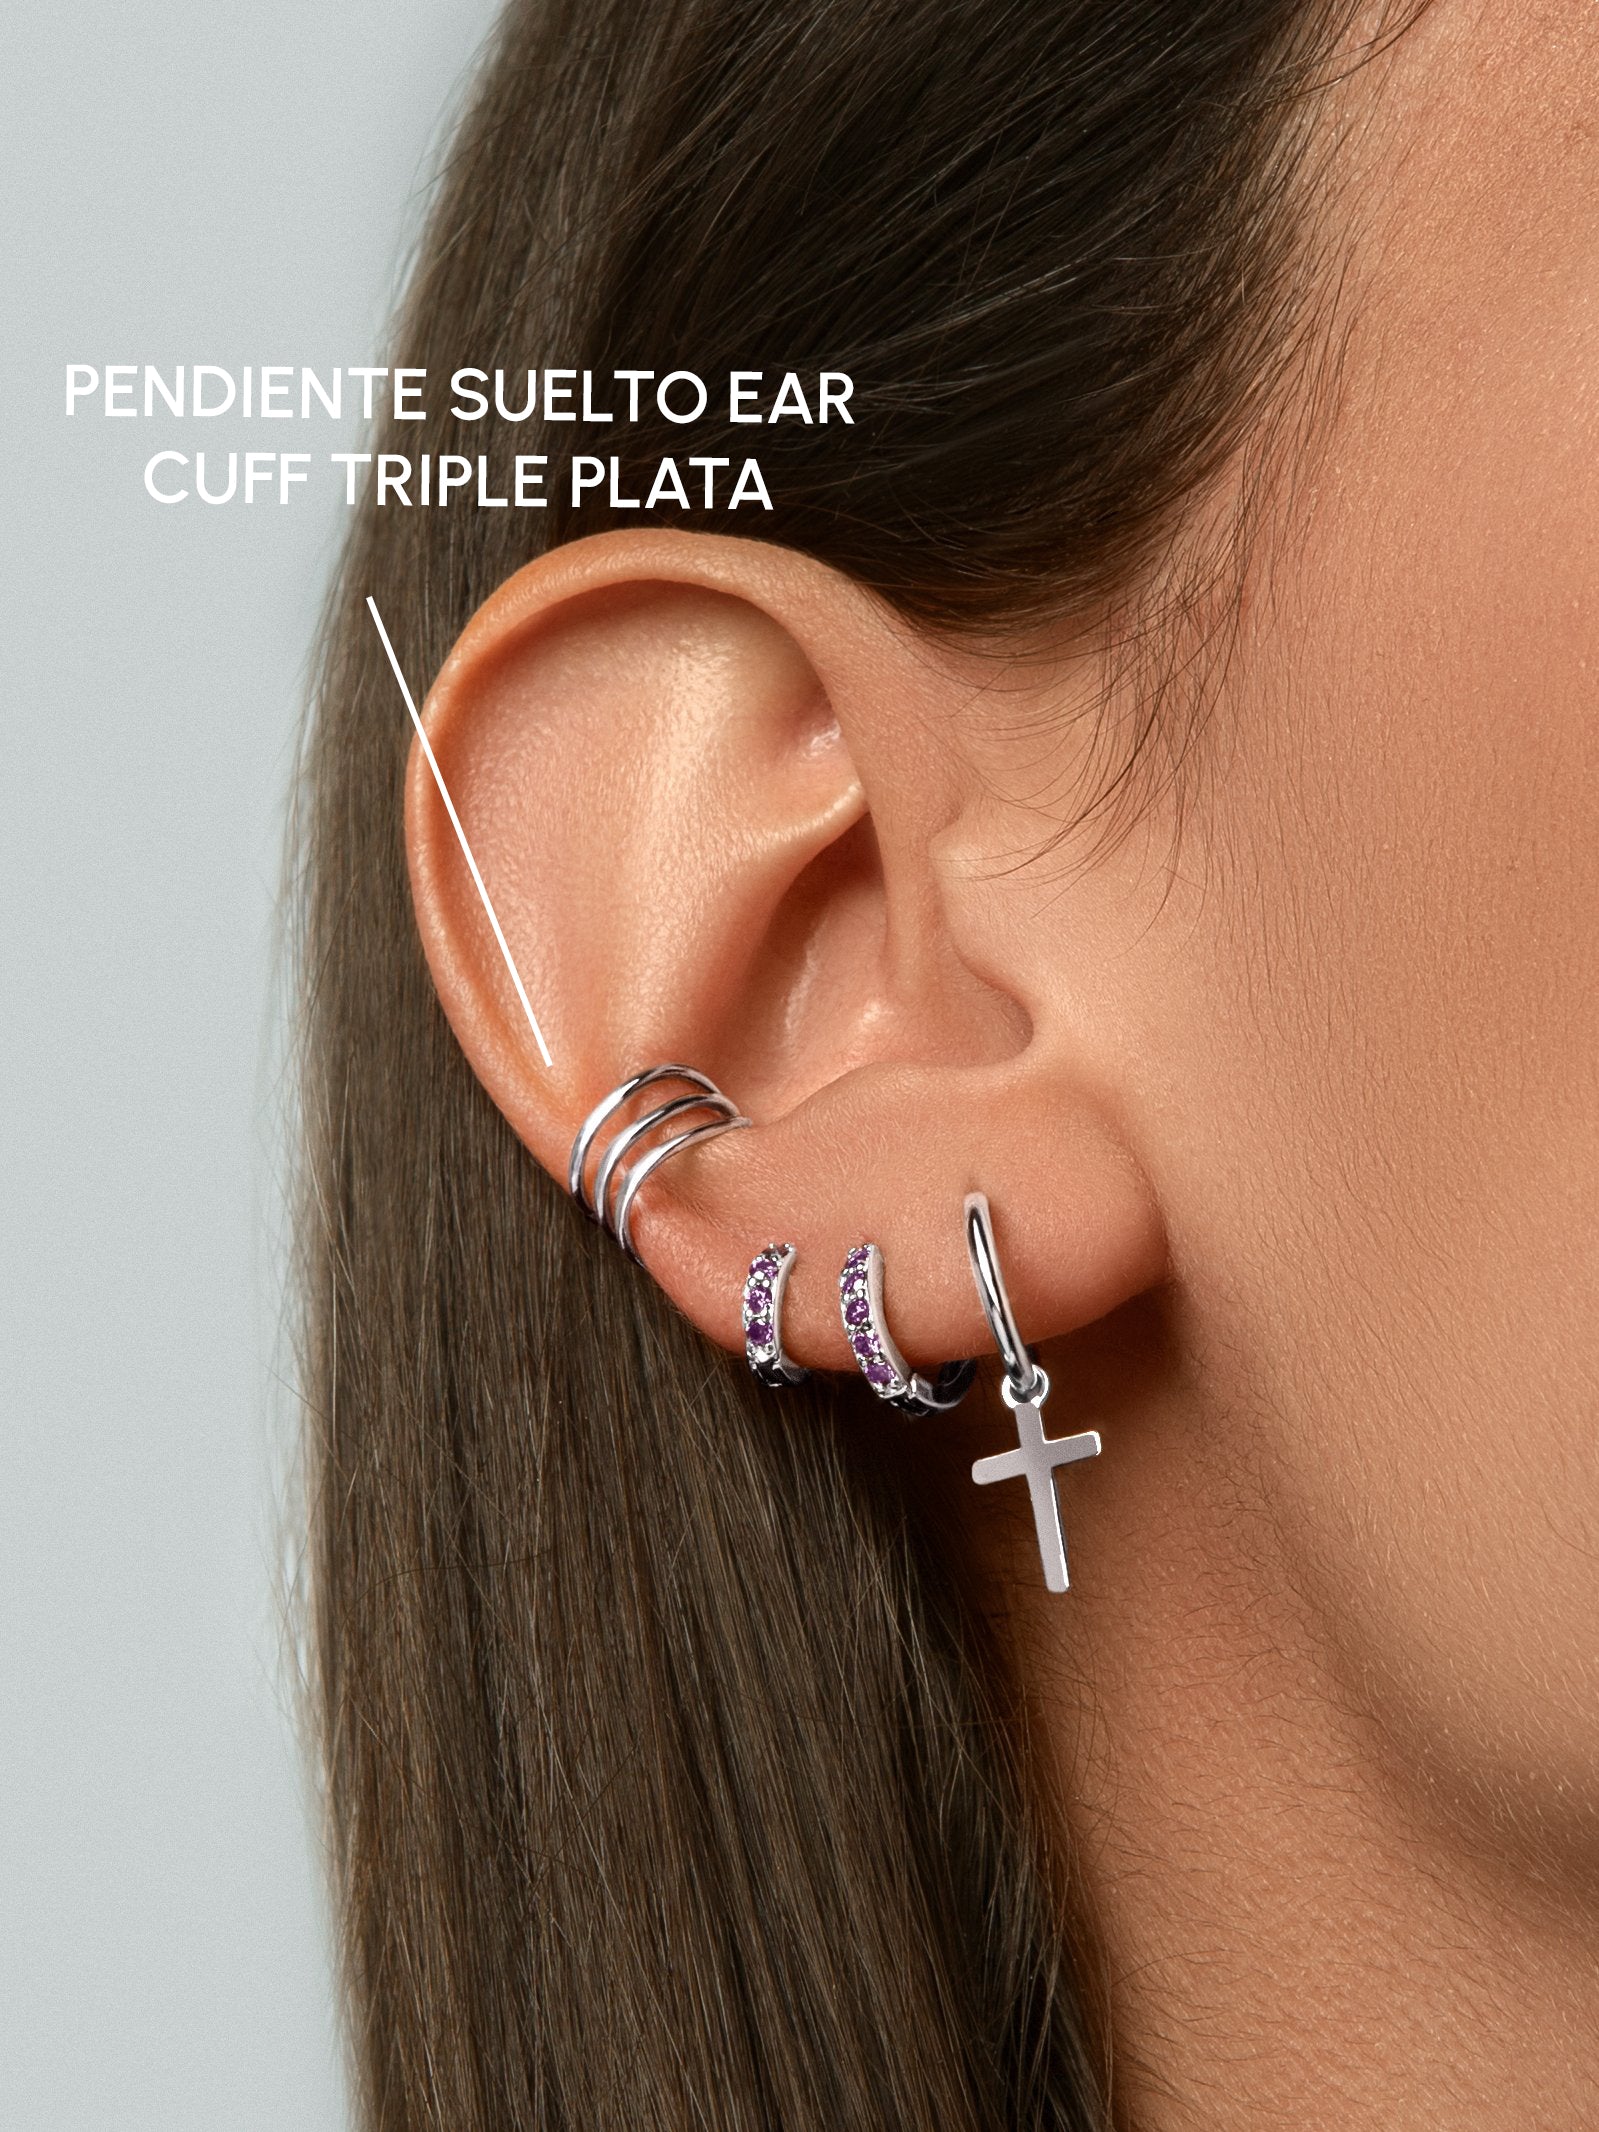 Talla De nada en términos de Pendiente Suelto Ear Cuff Triple Plata | Singularu